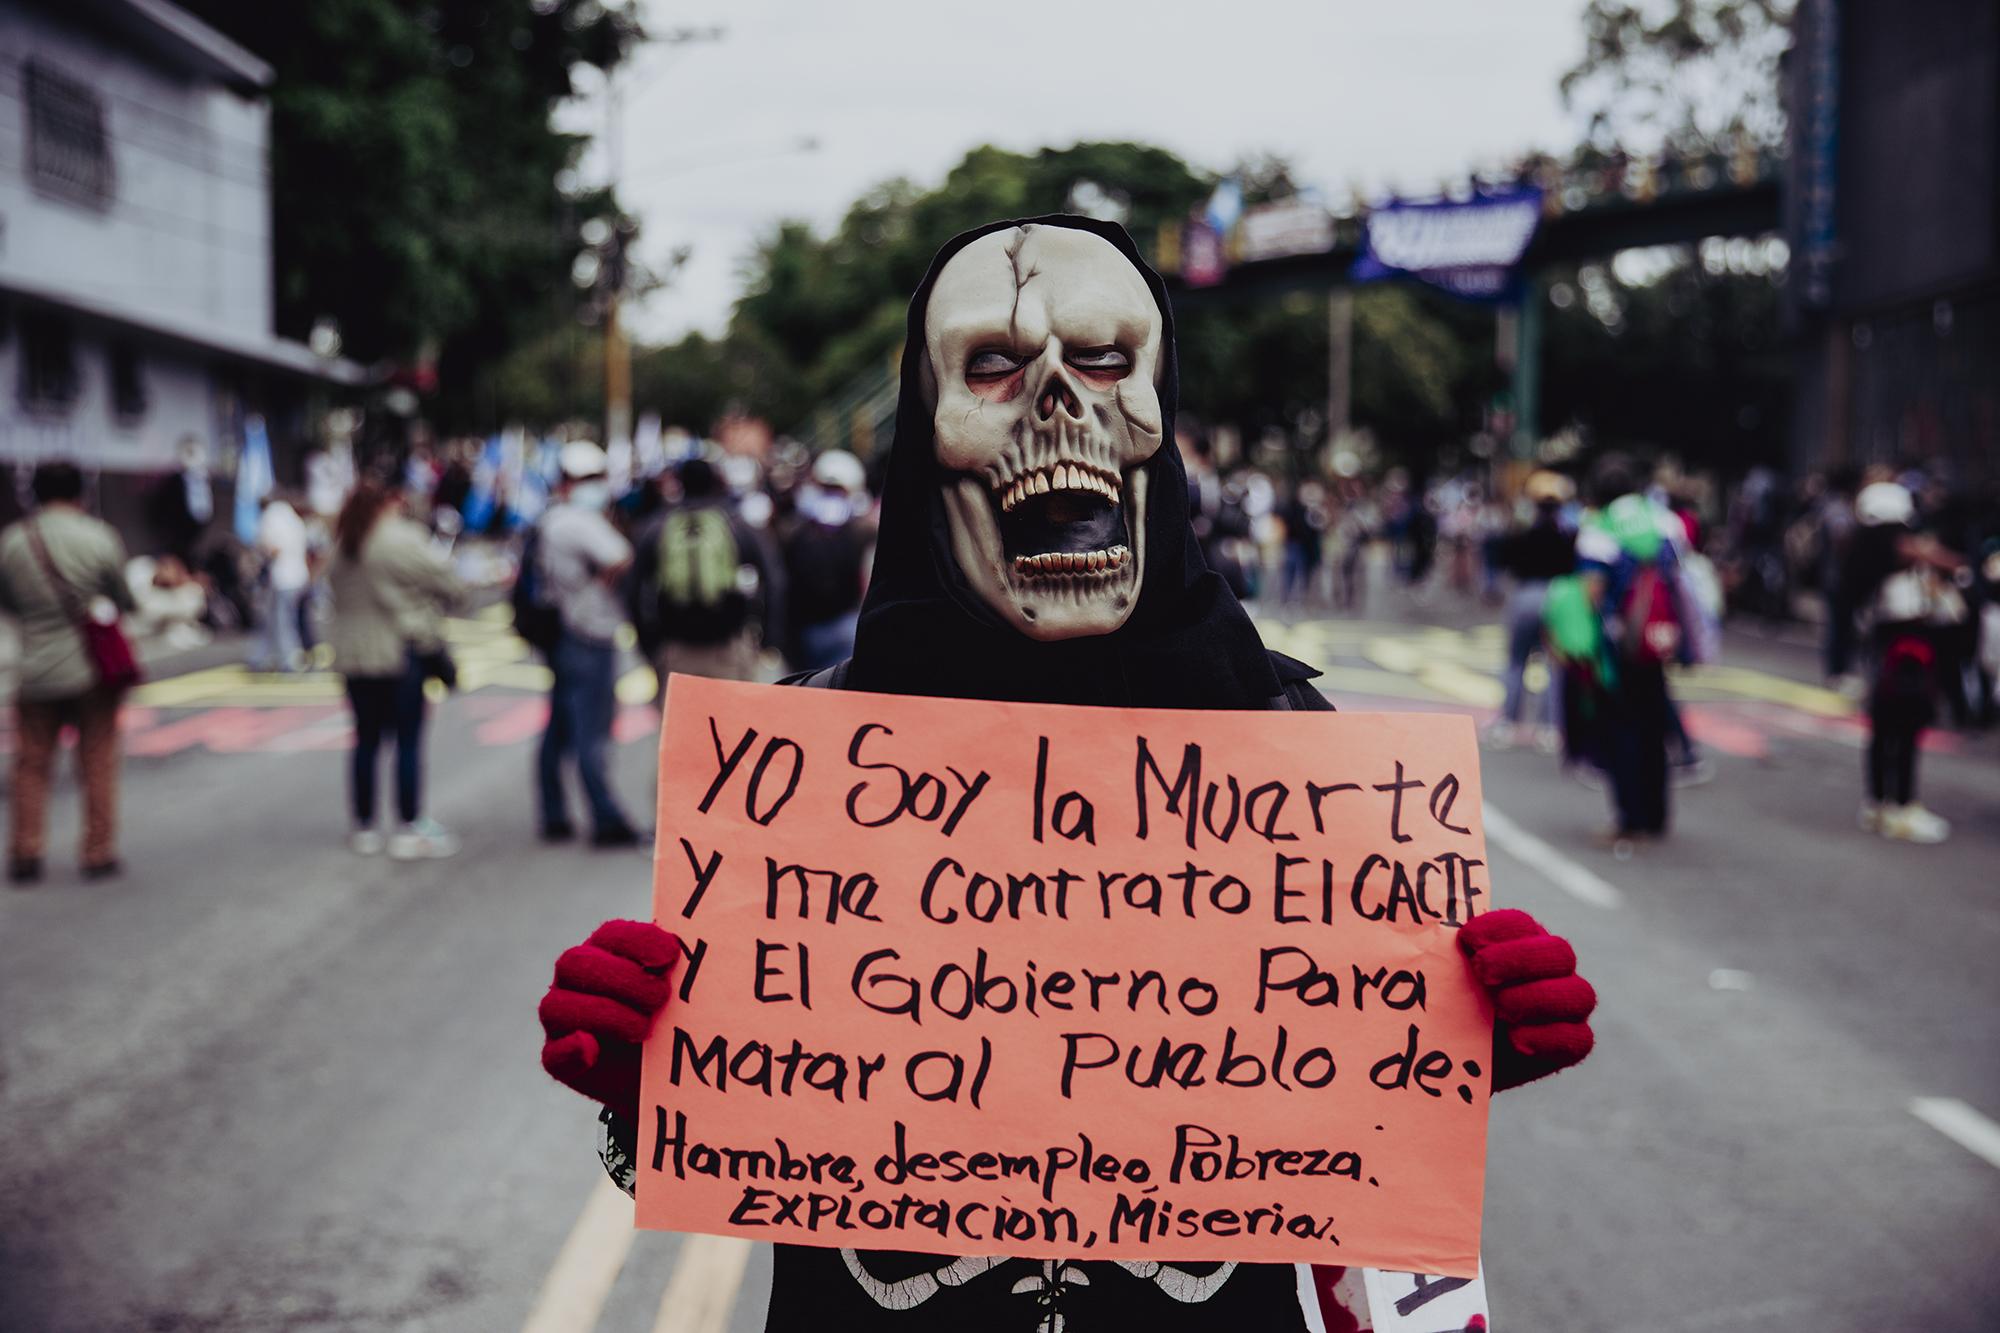 Los manifestantes acusaron al Gobierno de un mal manejo de la pandemia causada por la Covid-19, ya que Guatemala vive una tercera ola de contagios y registra a más de 3,000 personas infectadas en las últimas 24 horas.